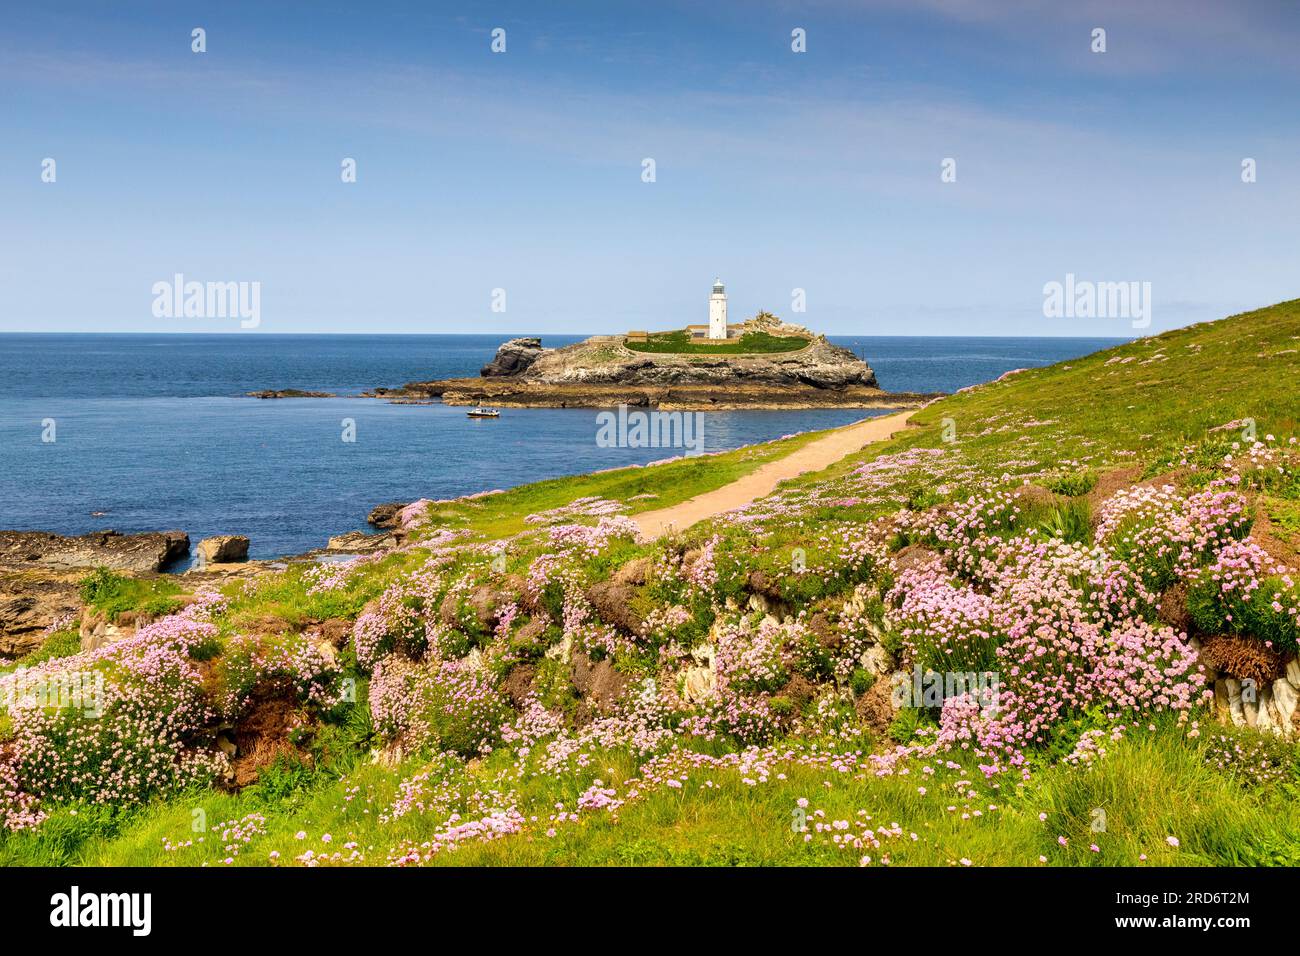 18 mai 2023 : Godrevy Head, Cornouailles, Royaume-Uni - Godrevy Head et Godrevy Lighthouse par une journée ensoleillée de printemps, et une abondance de friandises marines en fleurs. Banque D'Images